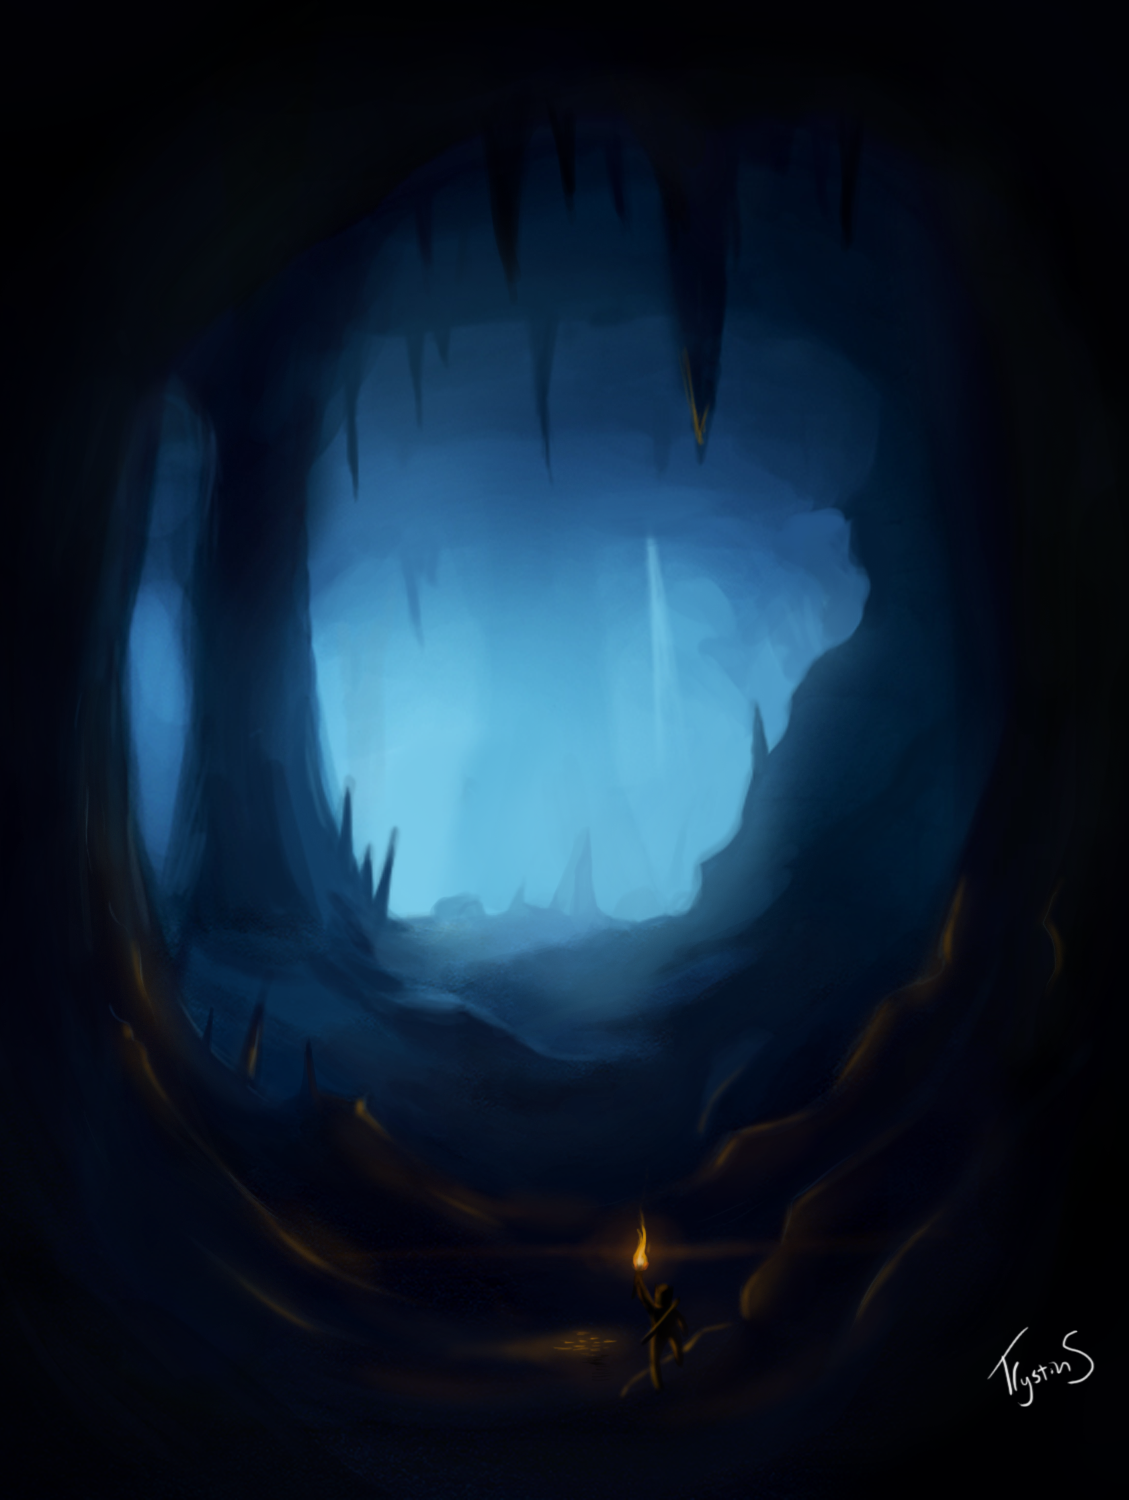 inside dark caves